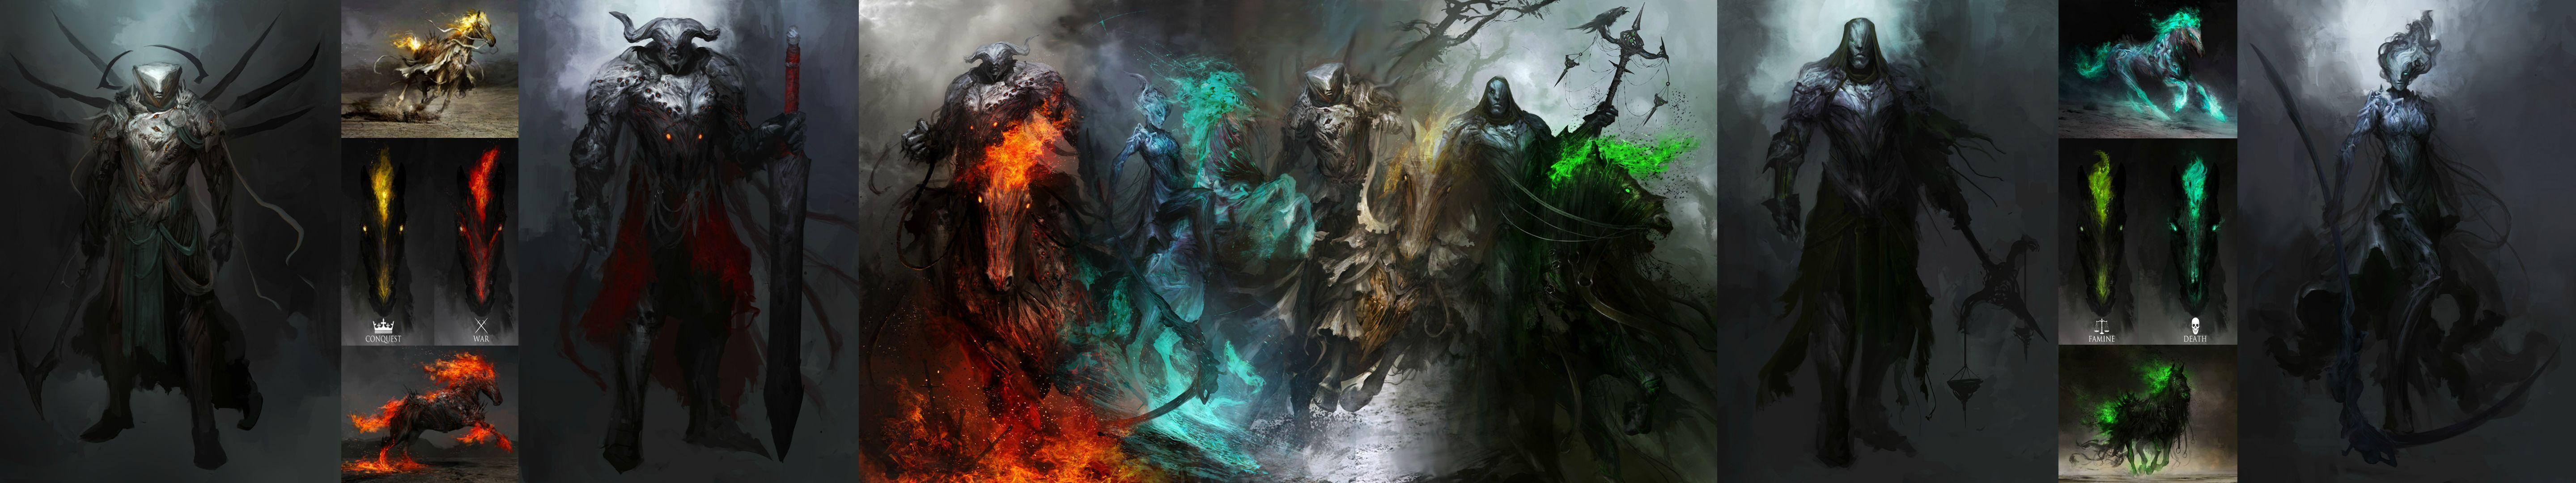 Horsemen of the Apocalypse [5760x1080]. wallpaper